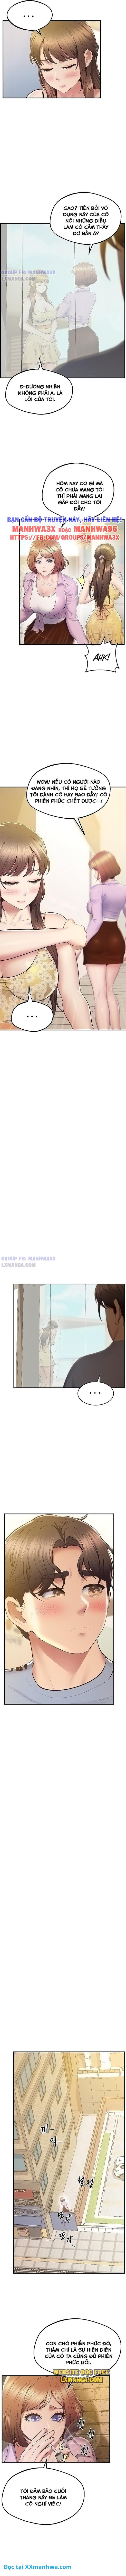 manhwax10.com - Truyện Manhwa Đồng hồ quyền năng Chương 20 Trang 4